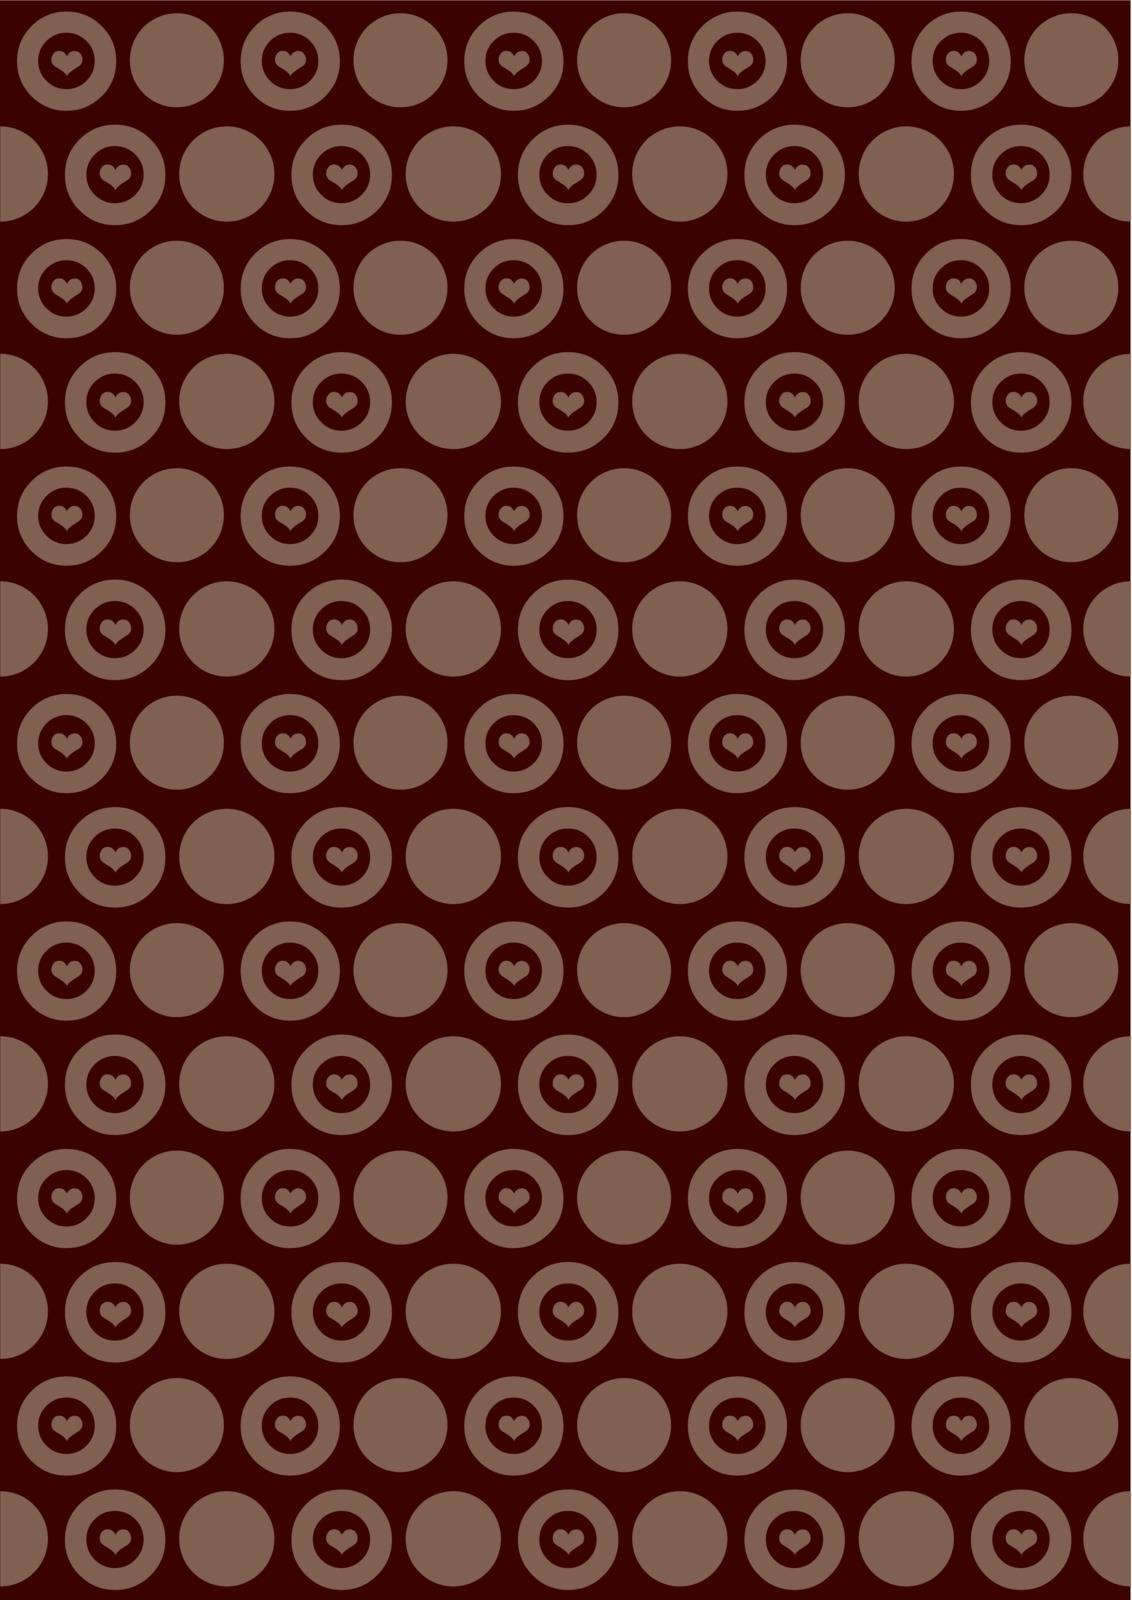 Circle Pattern by jenkoh